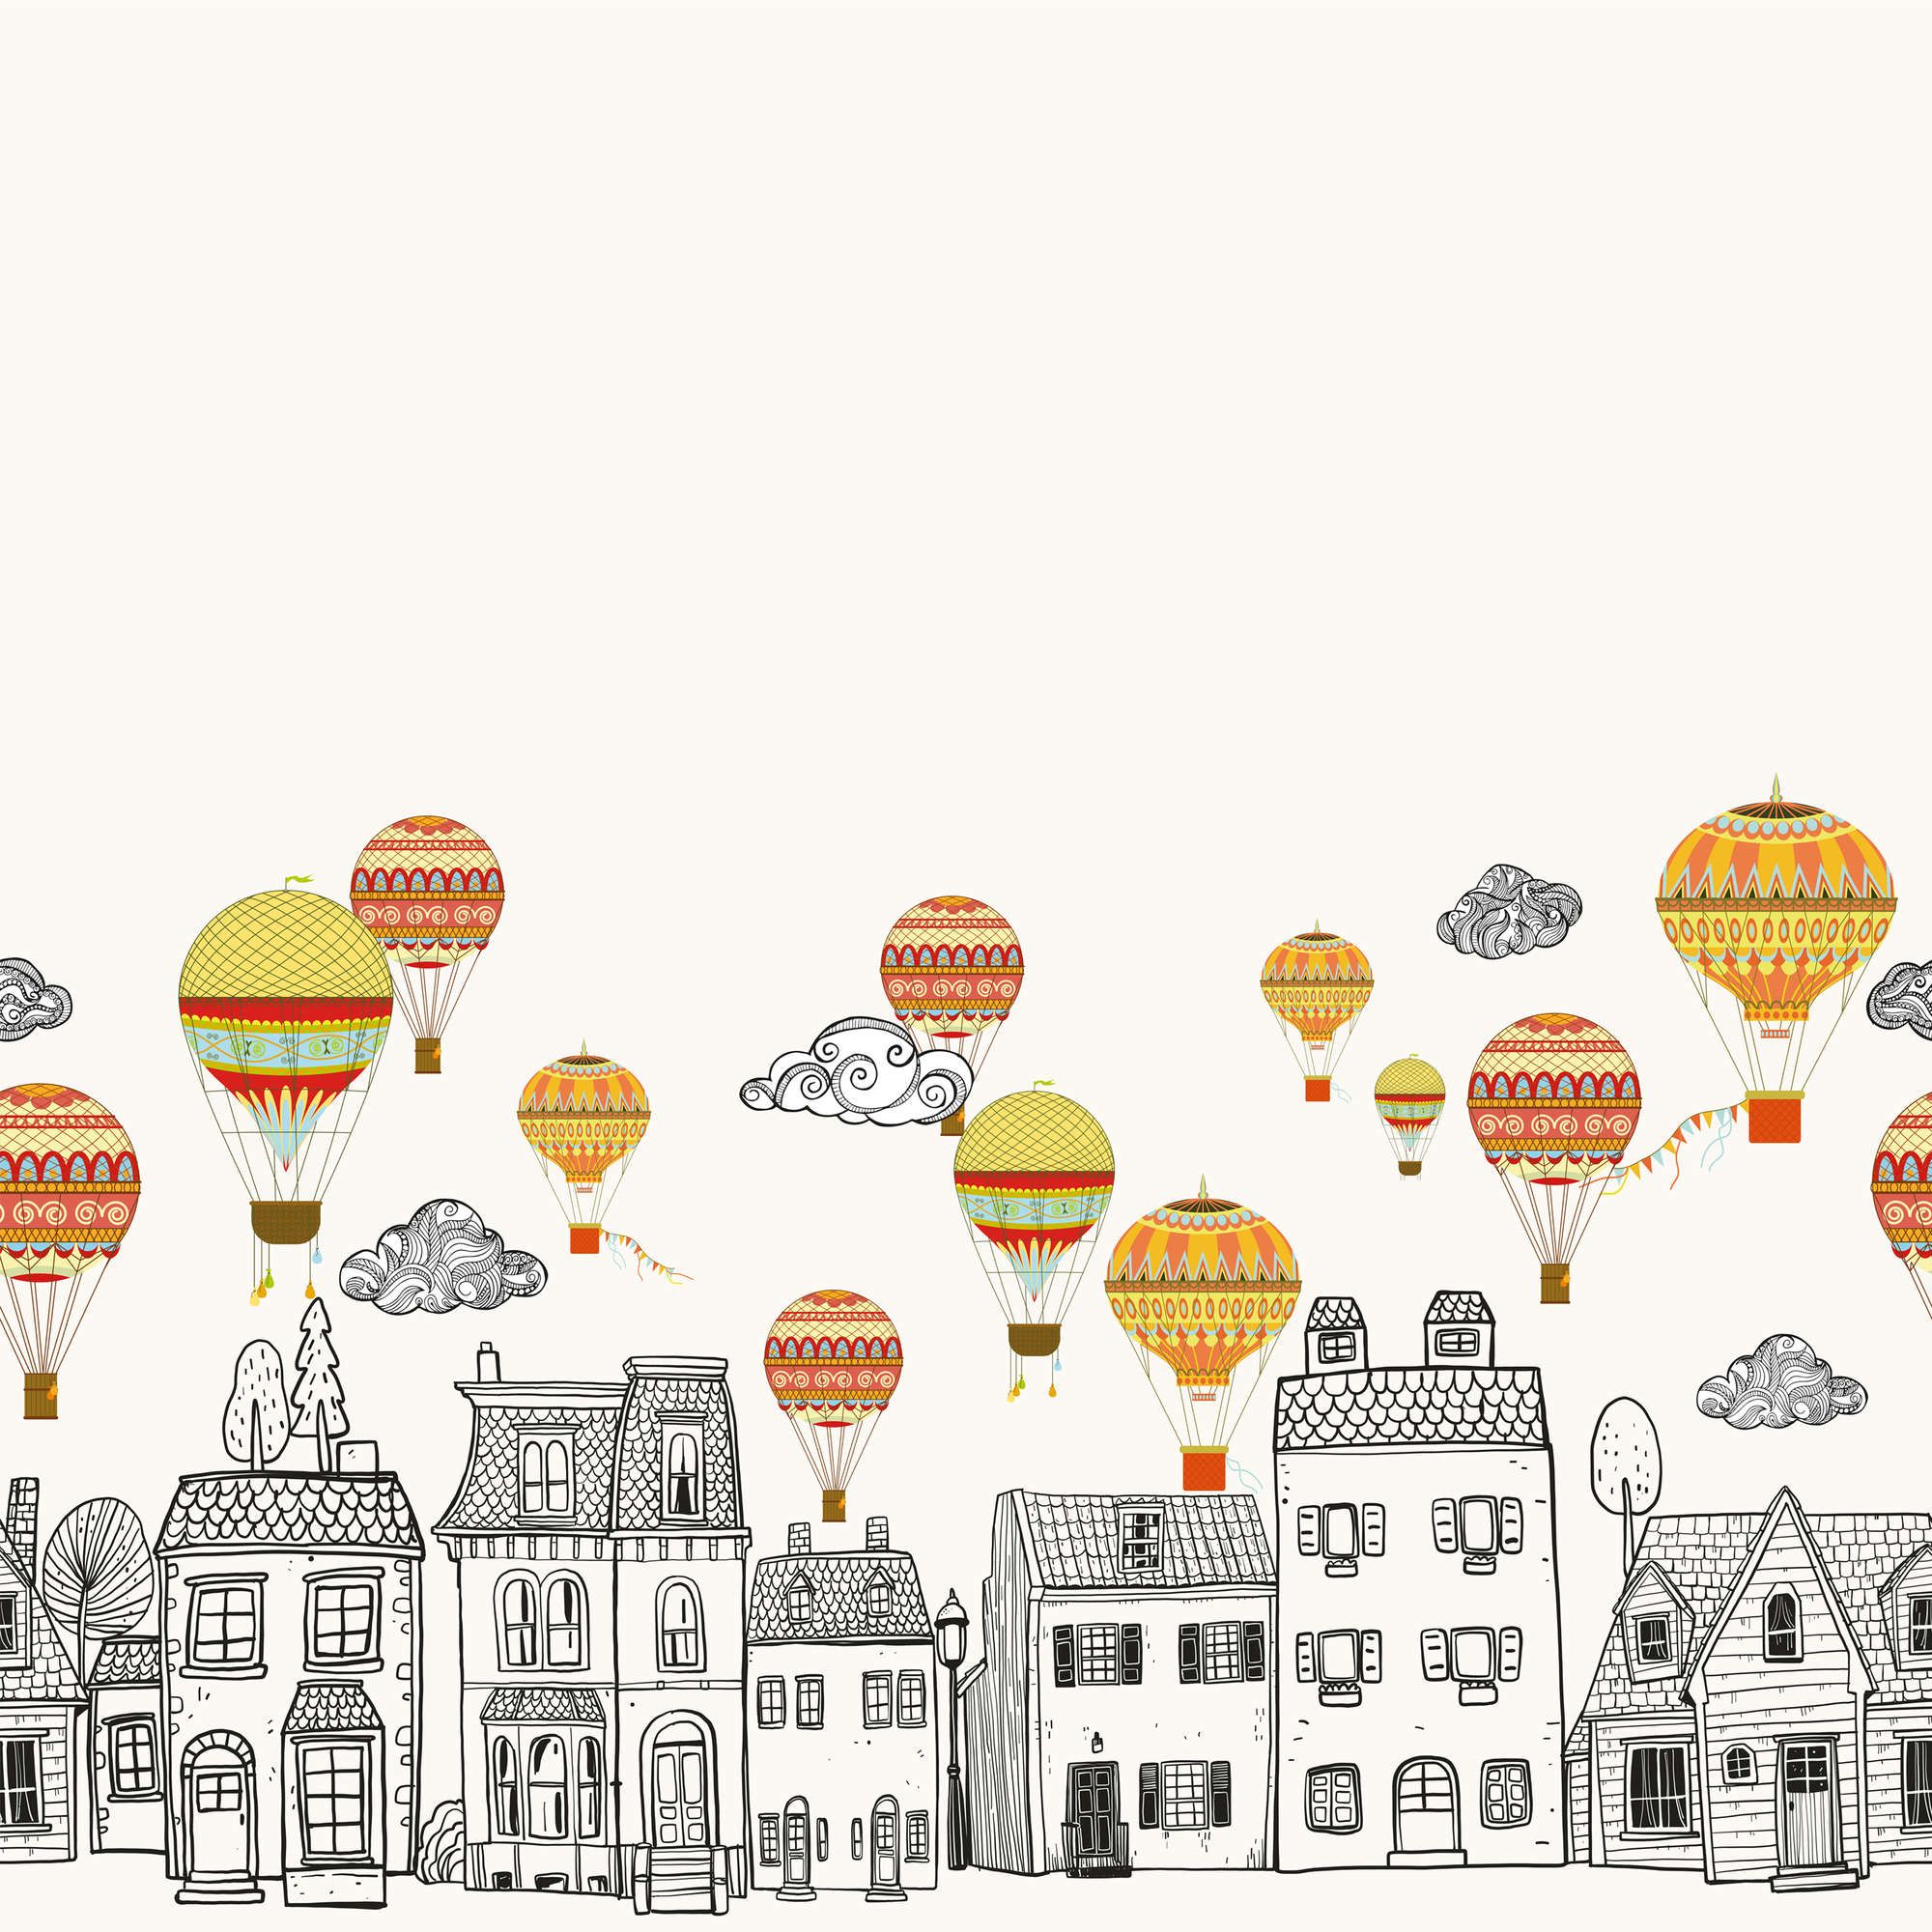             papiers peints à impression numérique Petite ville avec montgolfières - intissé structuré
        